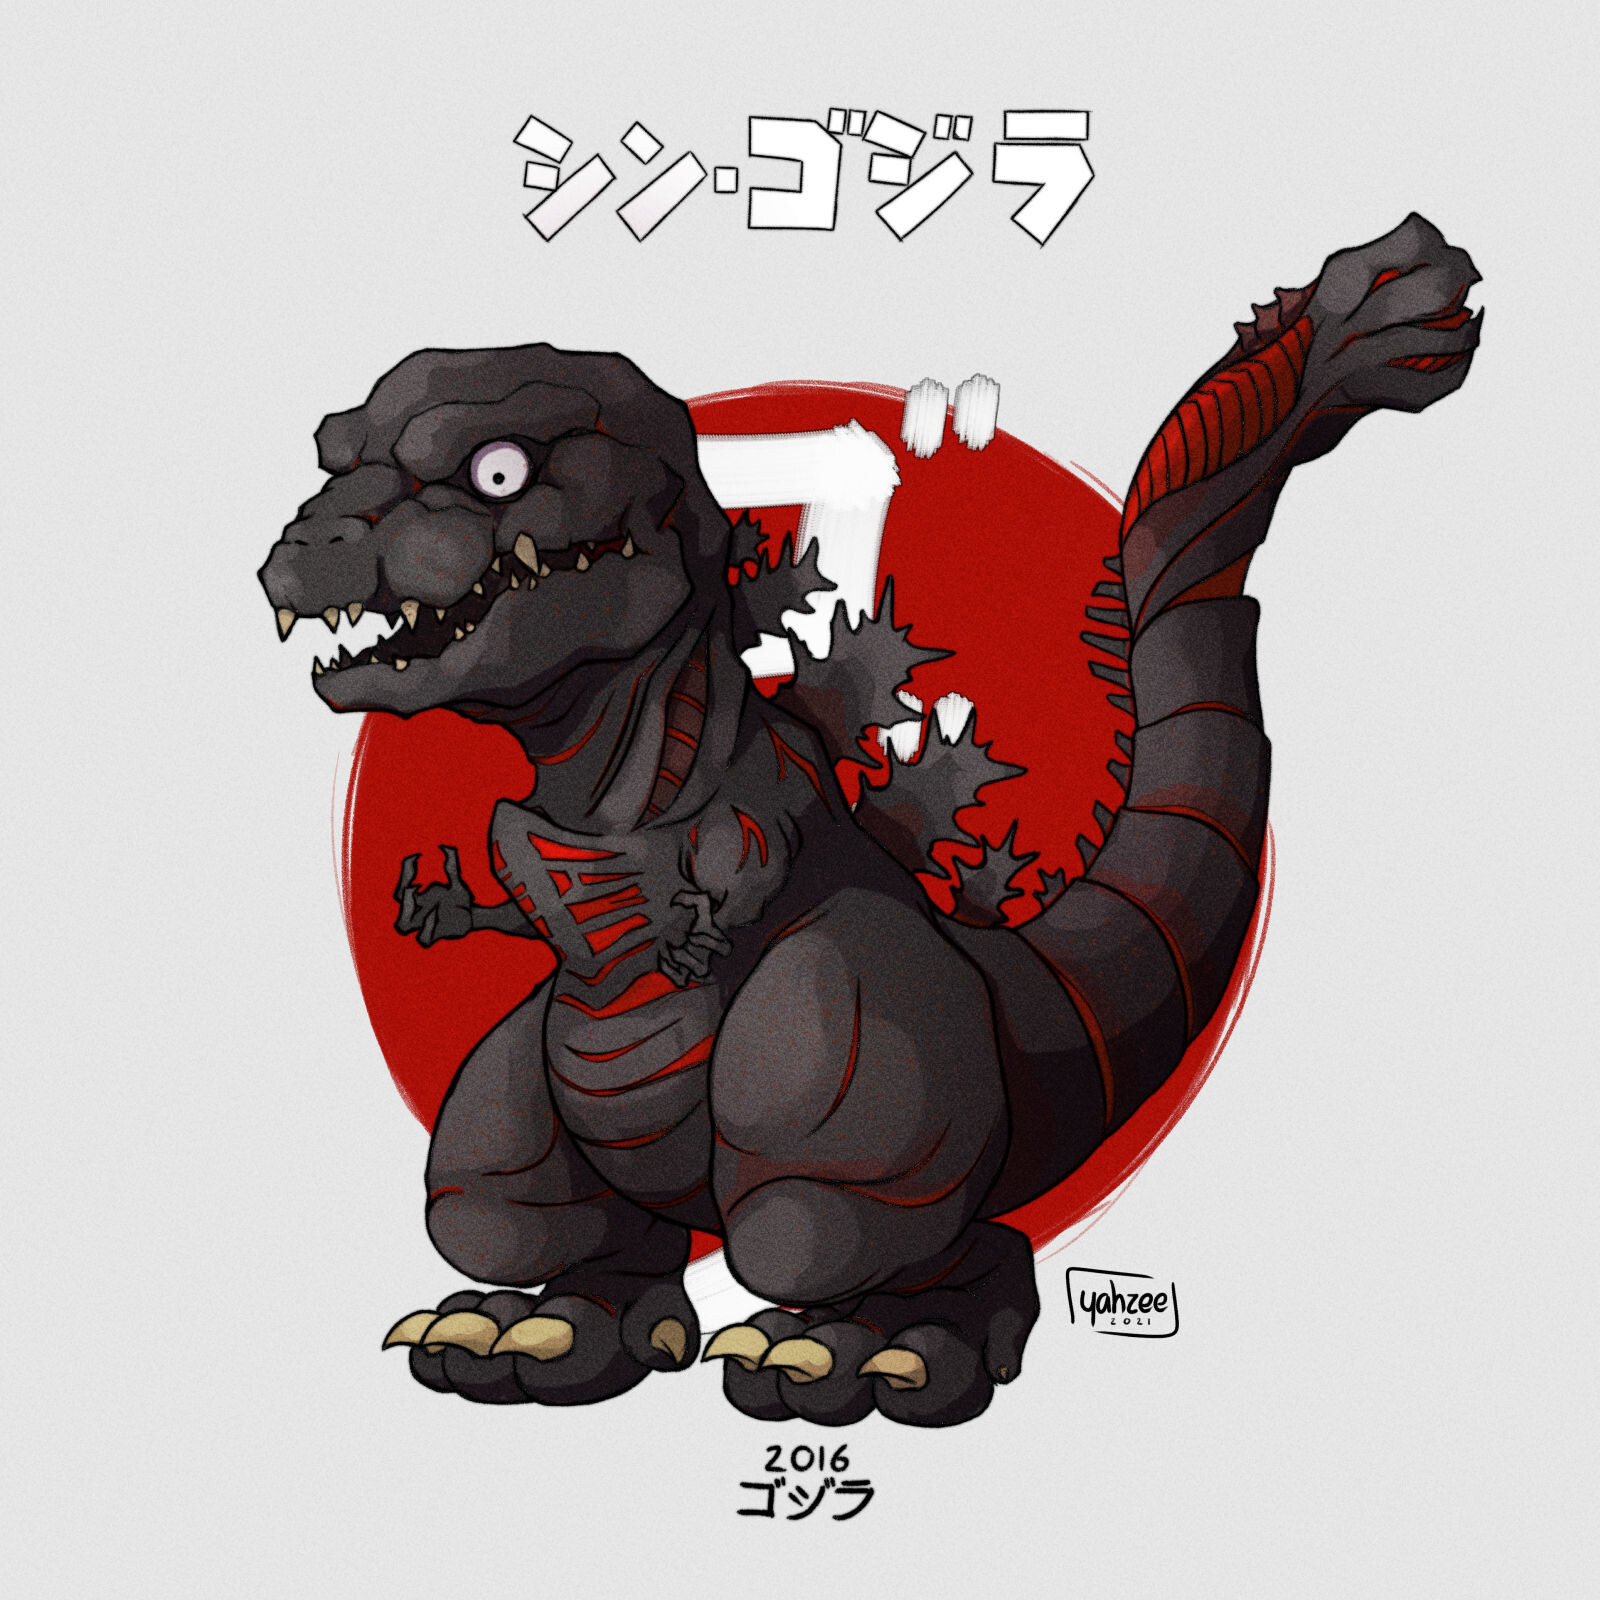 Yahzee - Godzilla Chibi History